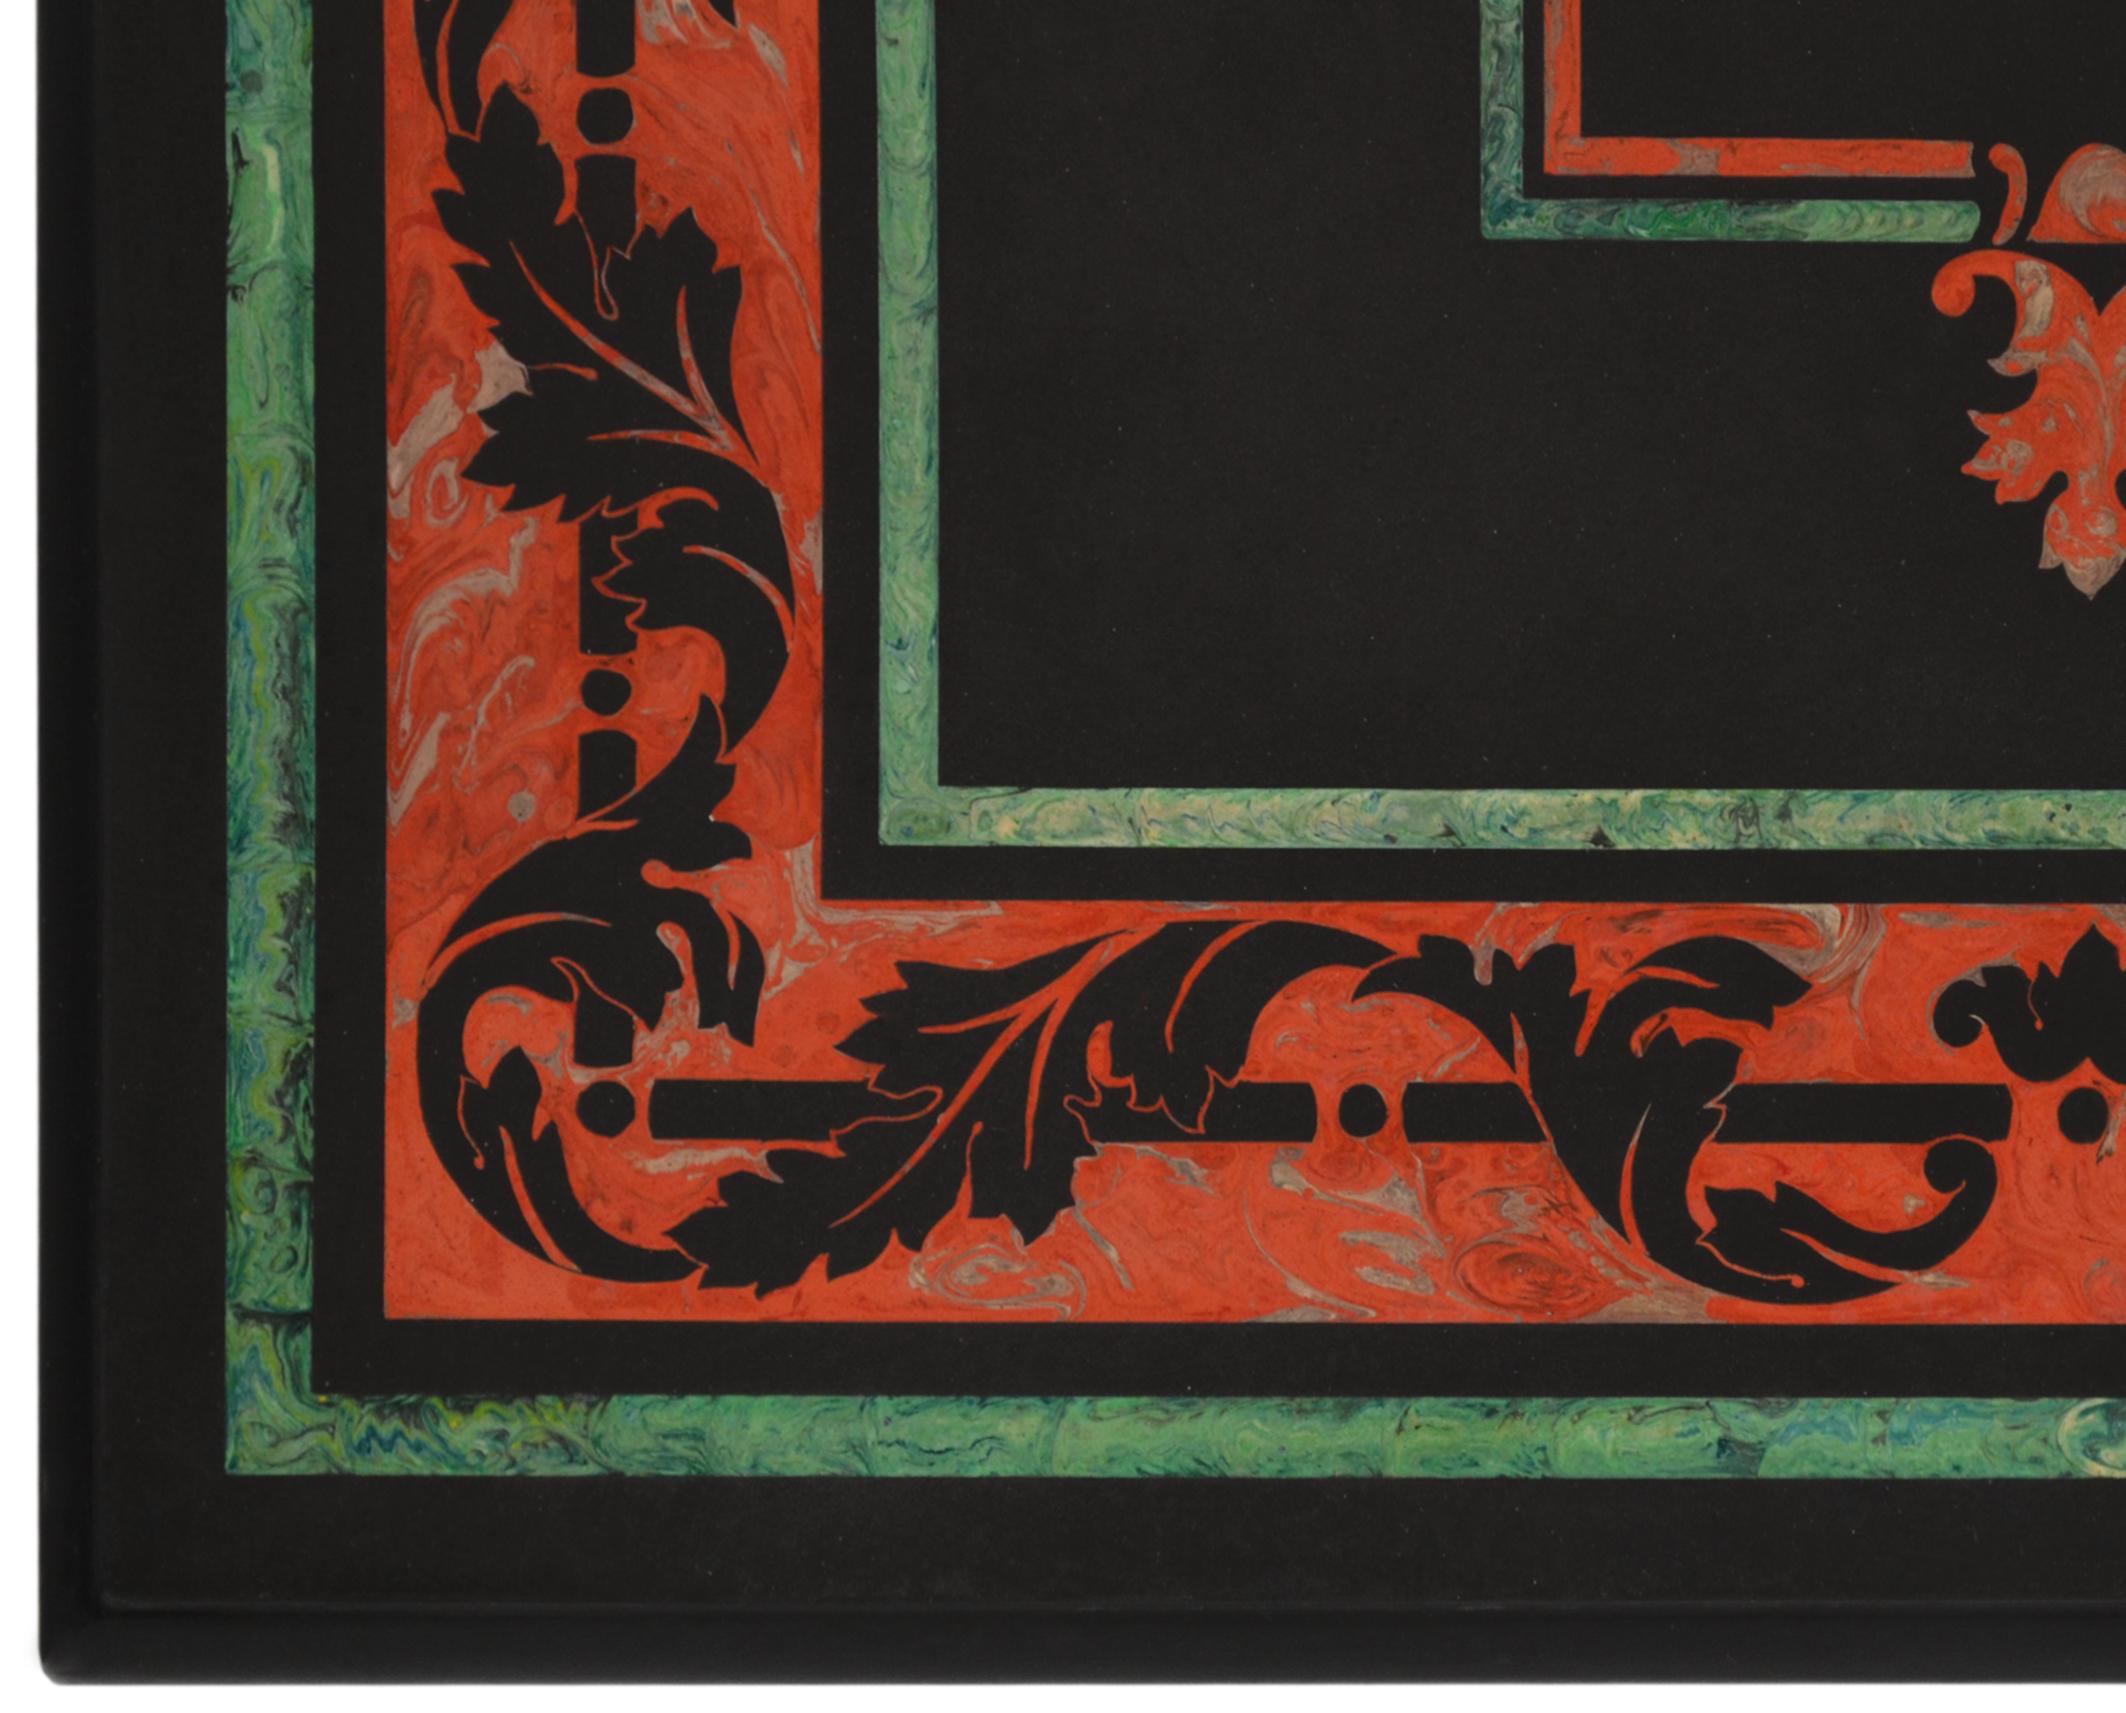 Dekorativer Couchtisch, entworfen von Cupioli, hergestellt in Italien, bestehend aus einer Schieferplatte mit Scagliola-Intarsien, Akanthusblatt-Dekoration.
 Geschnitzter Holzsockel, schwarz lackiert.
Dieser Artikel wurde von erfahrenen Handwerkern